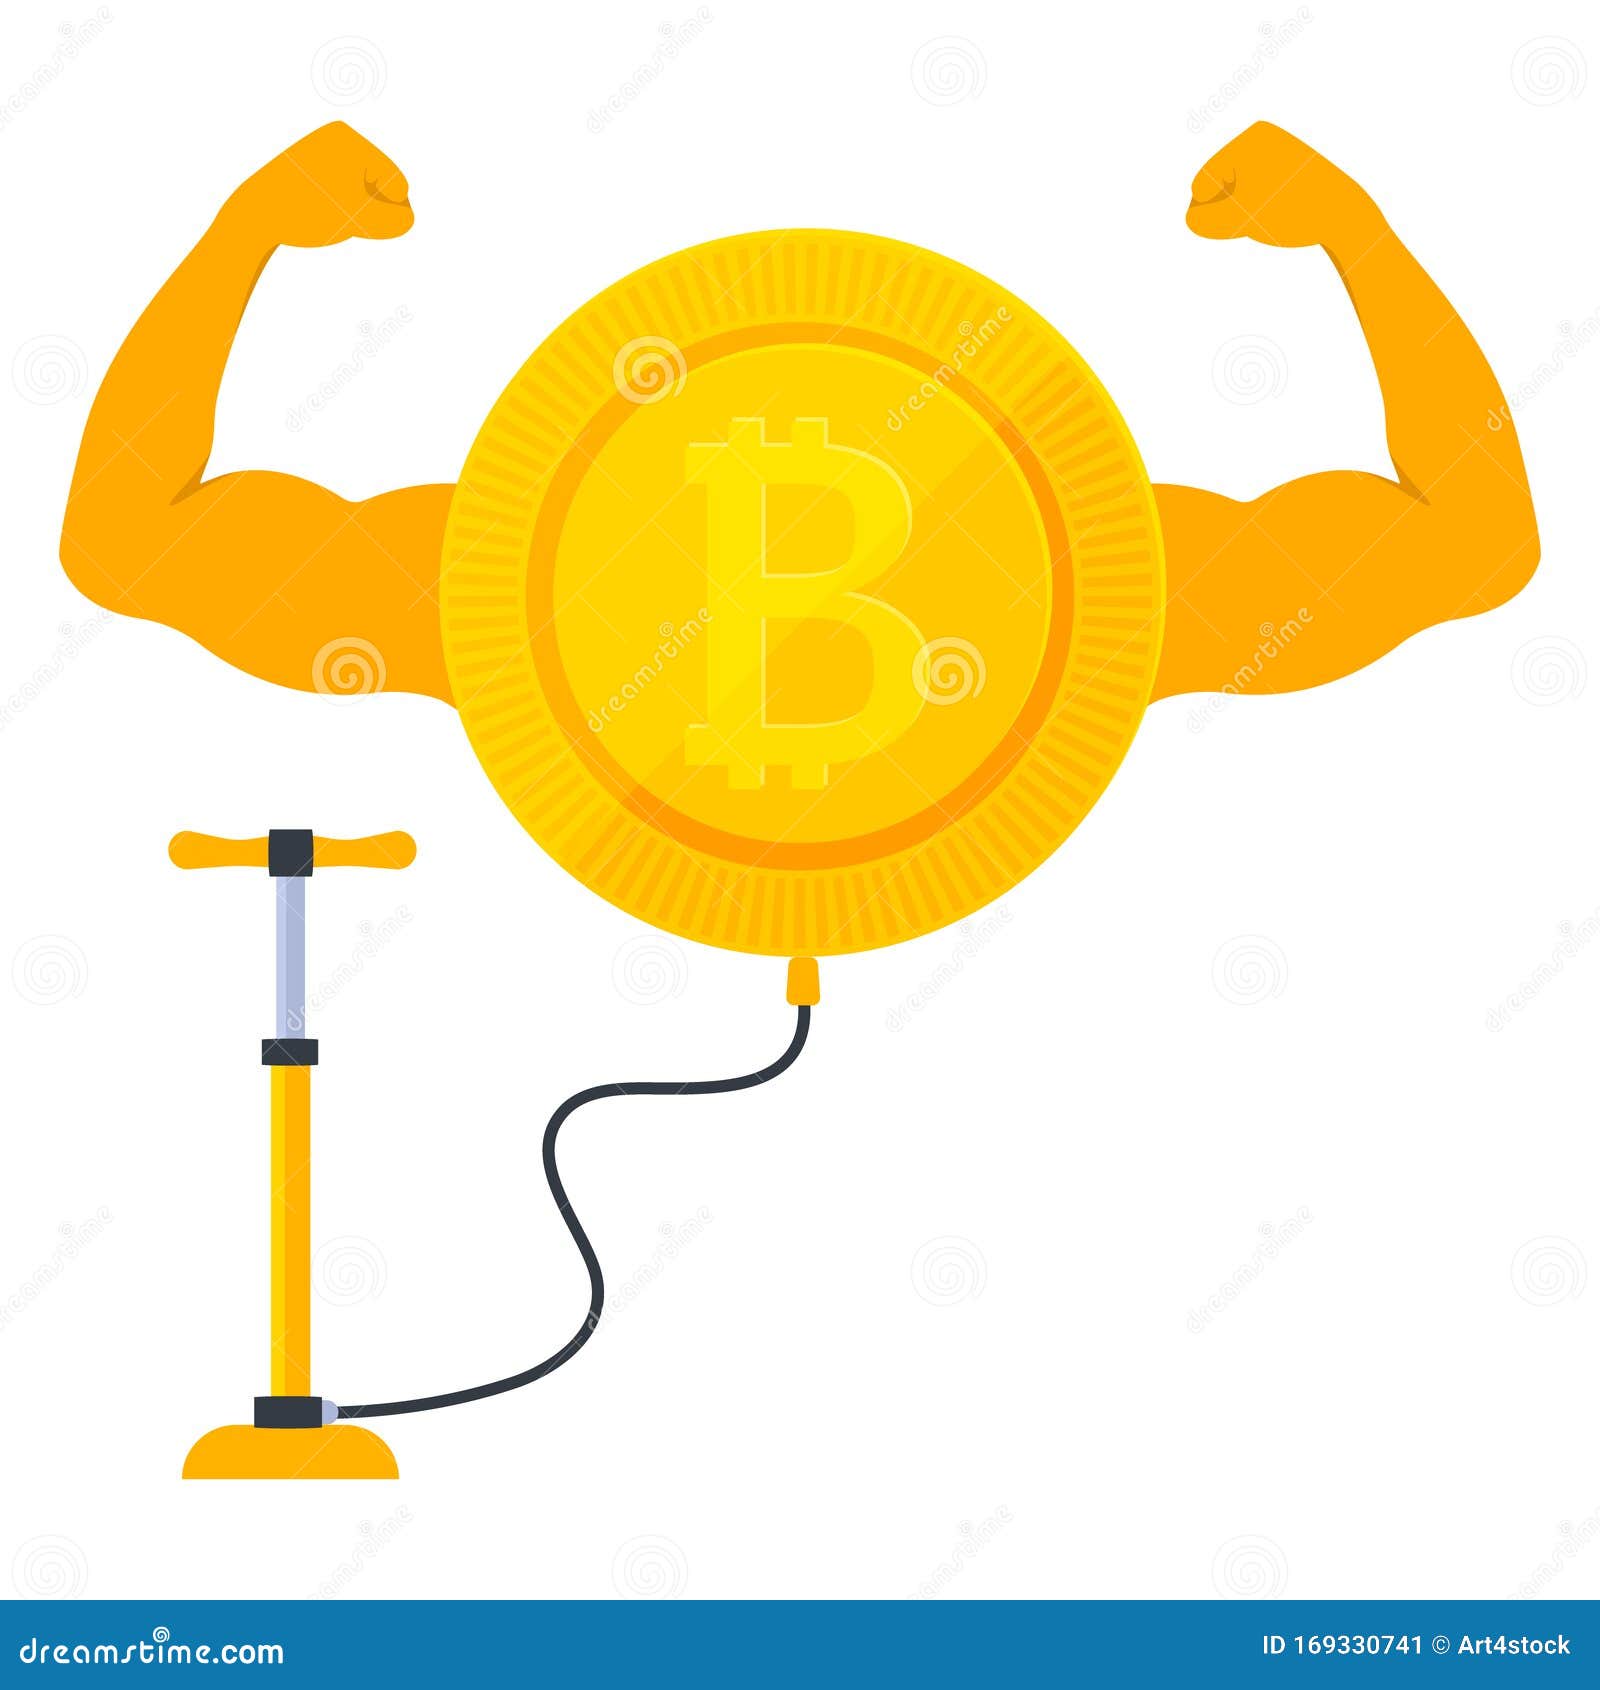 Manipuliacijos Bitcoin ir kriptovaliutų rinkoje - viskas apie „pump and dump” strategiją